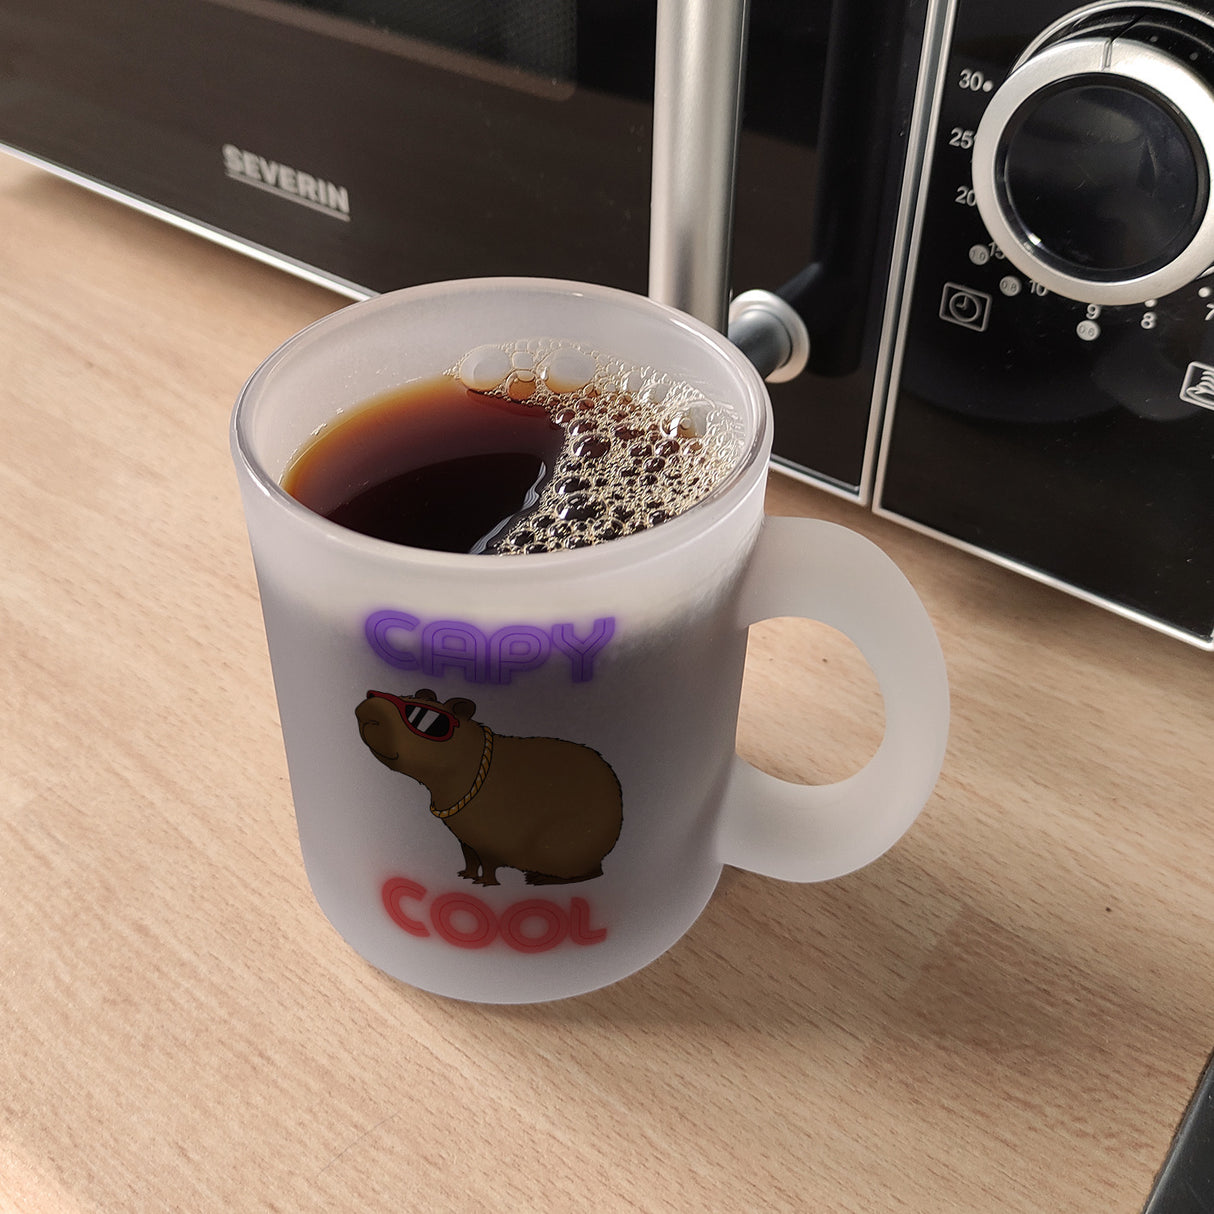 Capy Cool Kaffeebecher mit coolem Capybara